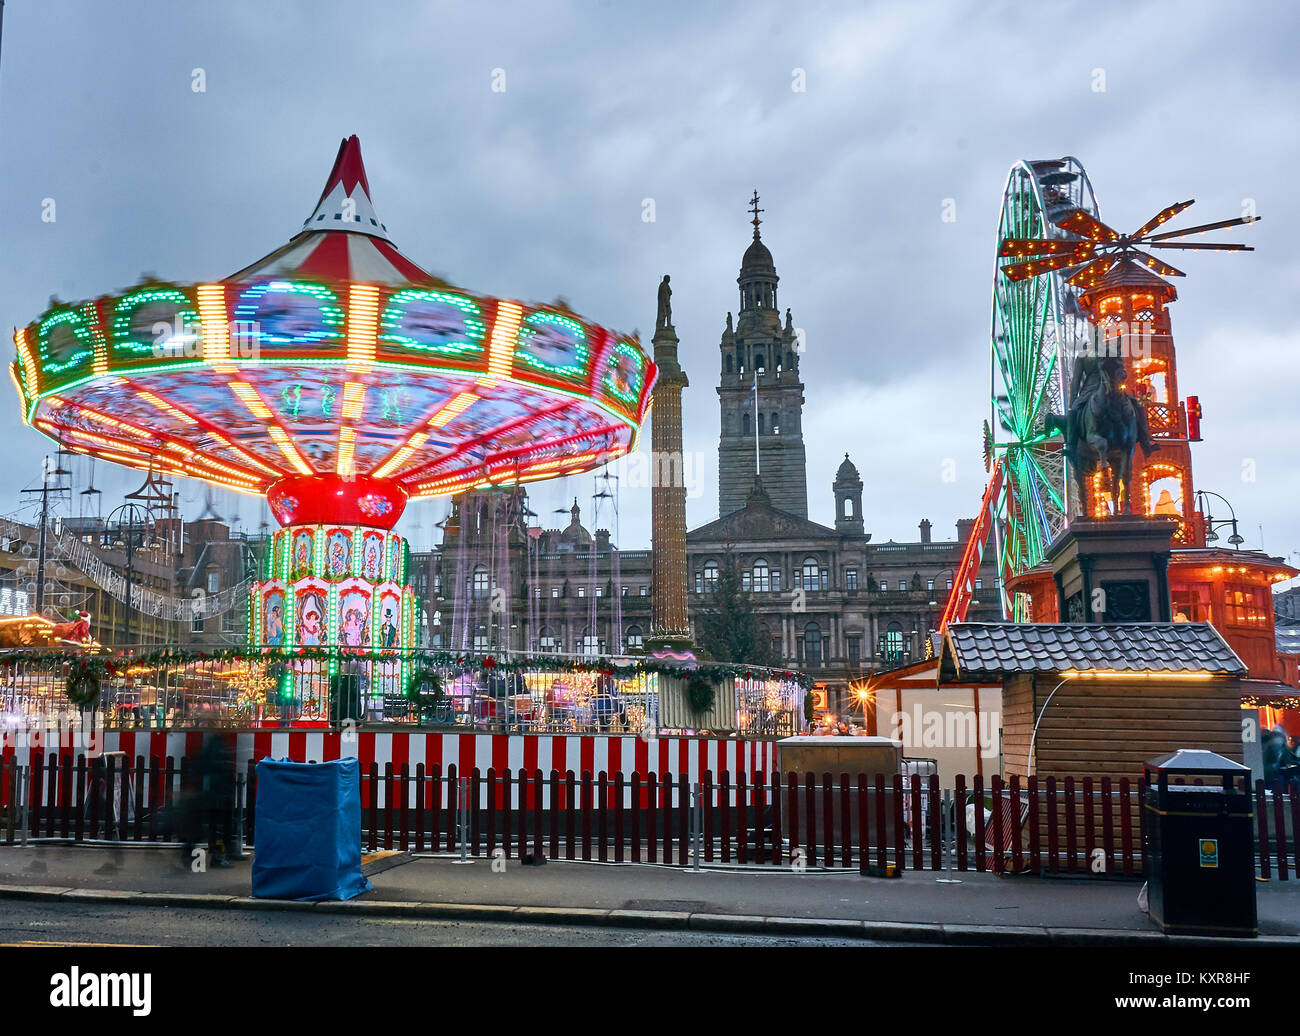 Weihnachtsmarkt mit Karussells und anderen Attraktionen auf dem George Square in Glasgow, Schottland. Stockfoto